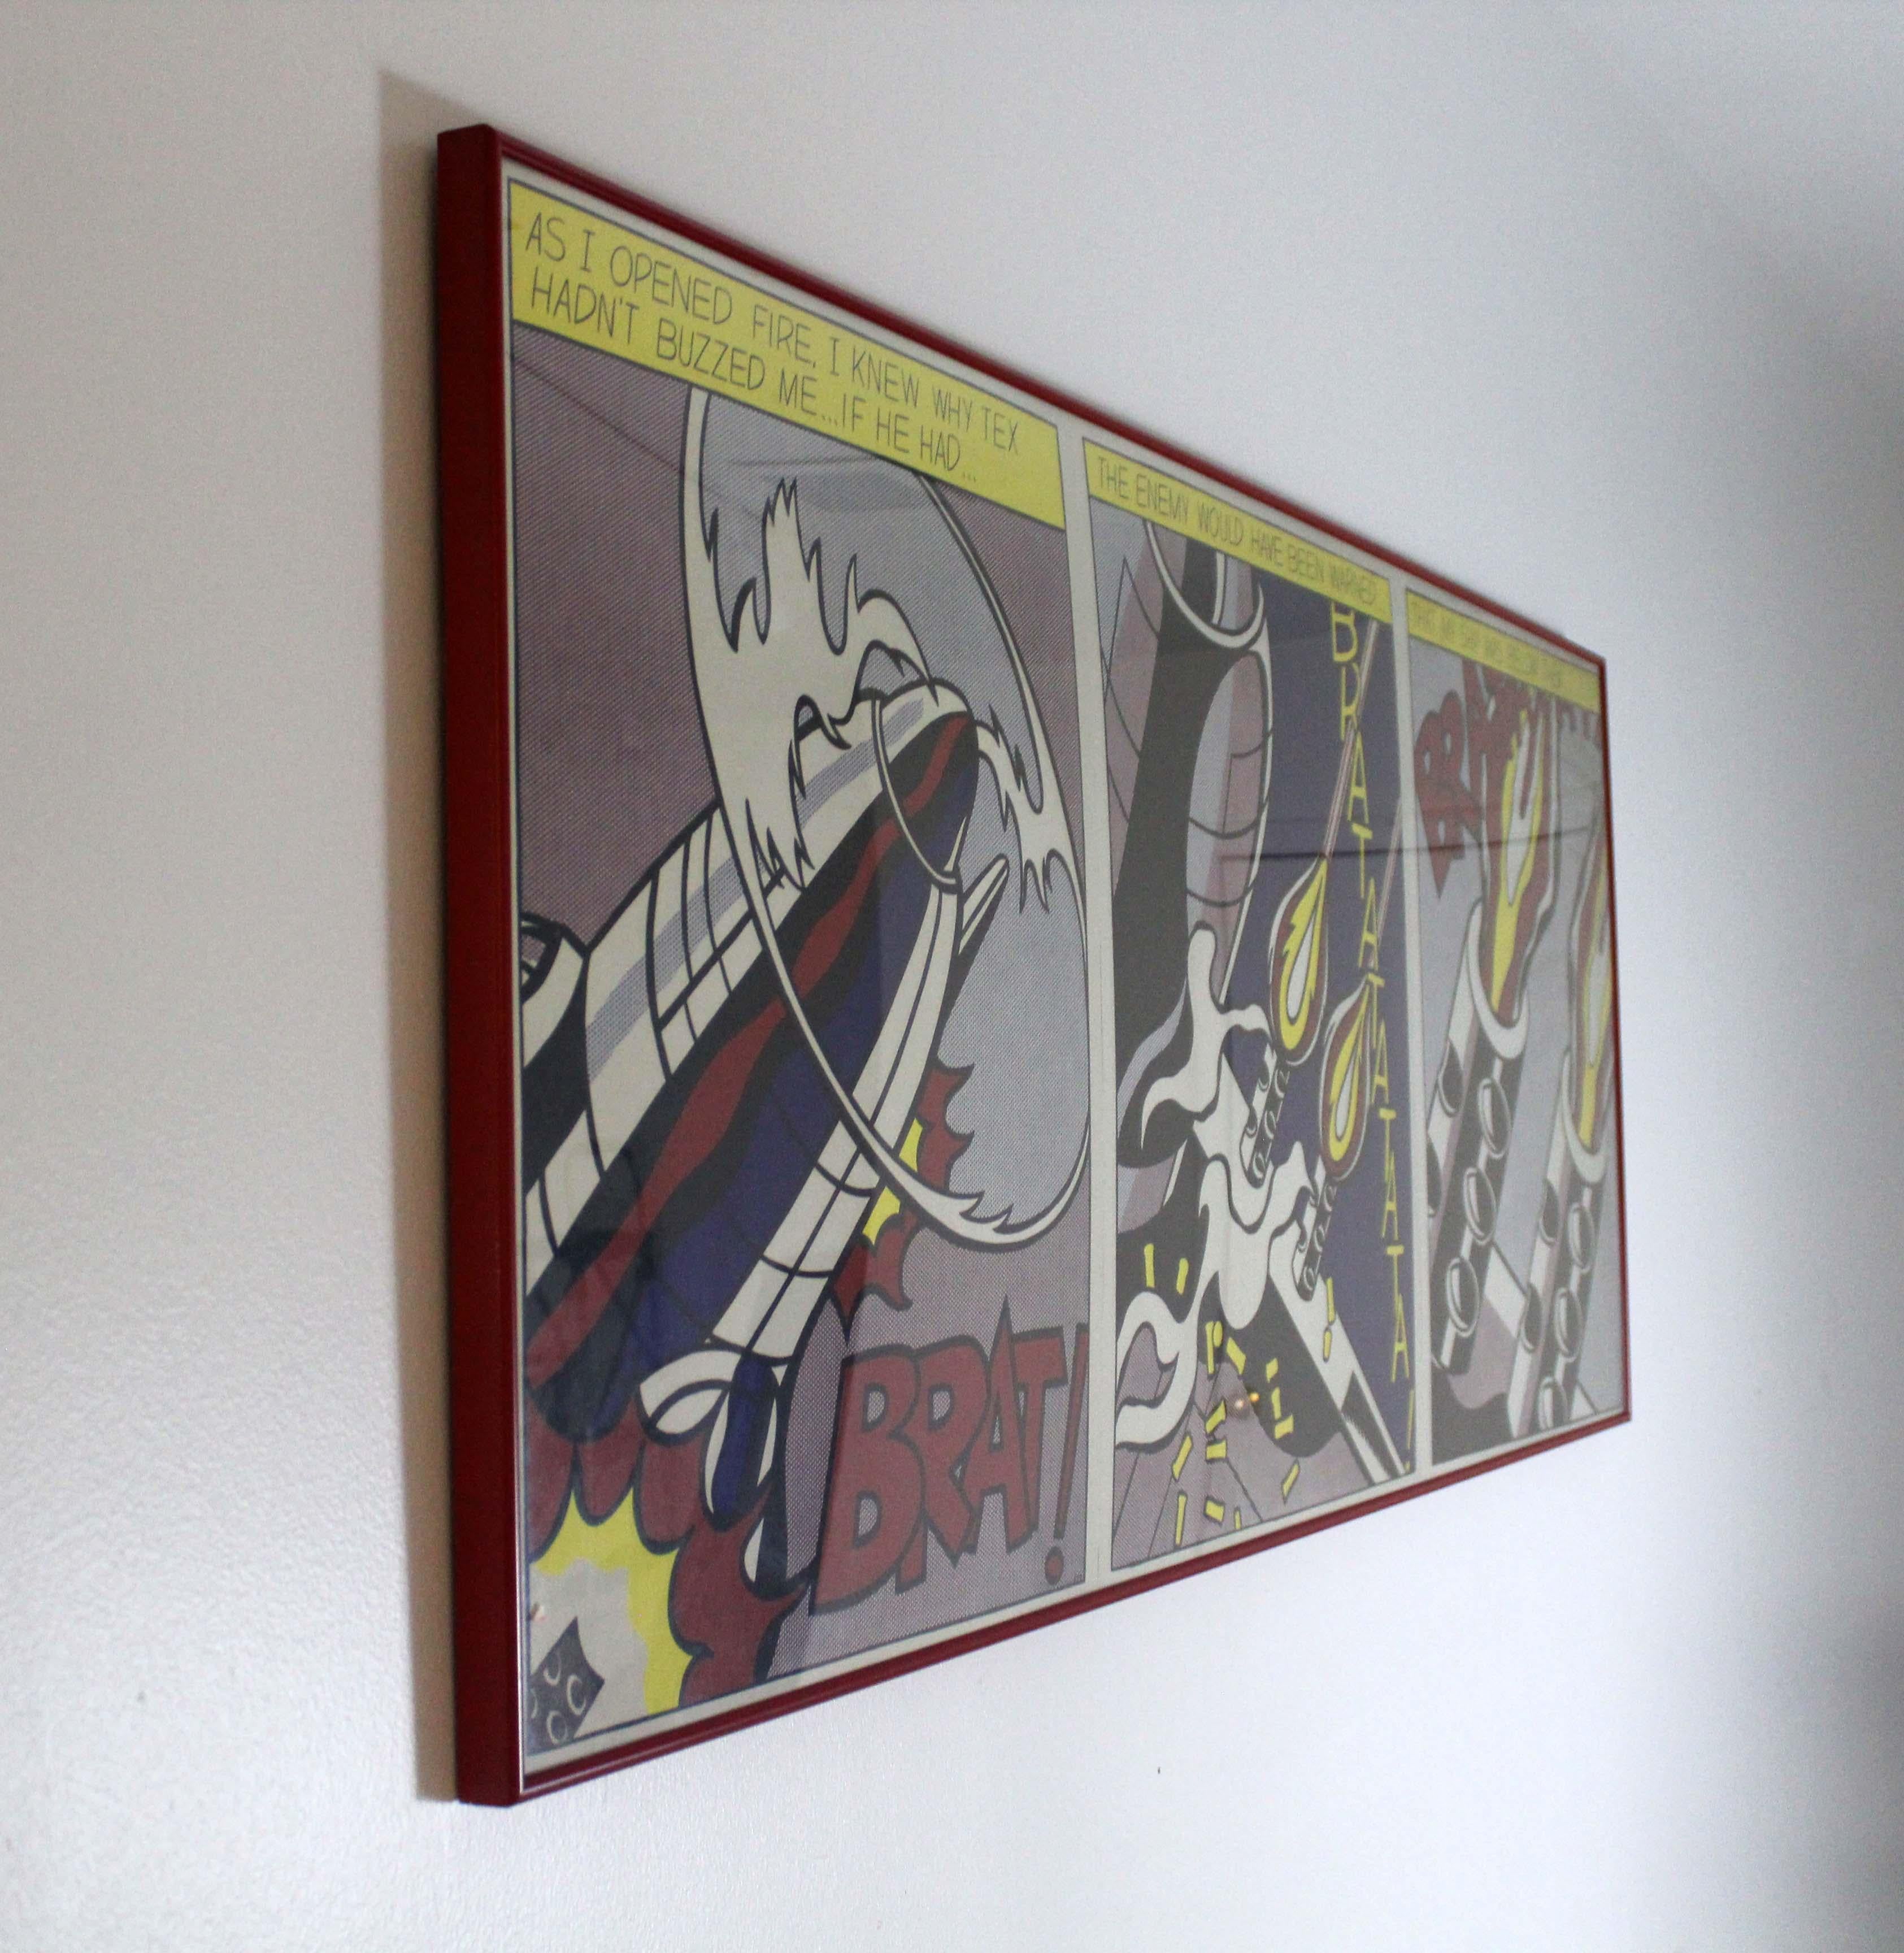 Affiche vintage emblématique du pop art représentant As I Opened Fire de Roy Lichtenstein - une peinture à l'huile et au magnétisme sur toile datant de 1964. L'œuvre est conservée au Stedelijk Museum d'Amsterdam. La source du sujet est constituée